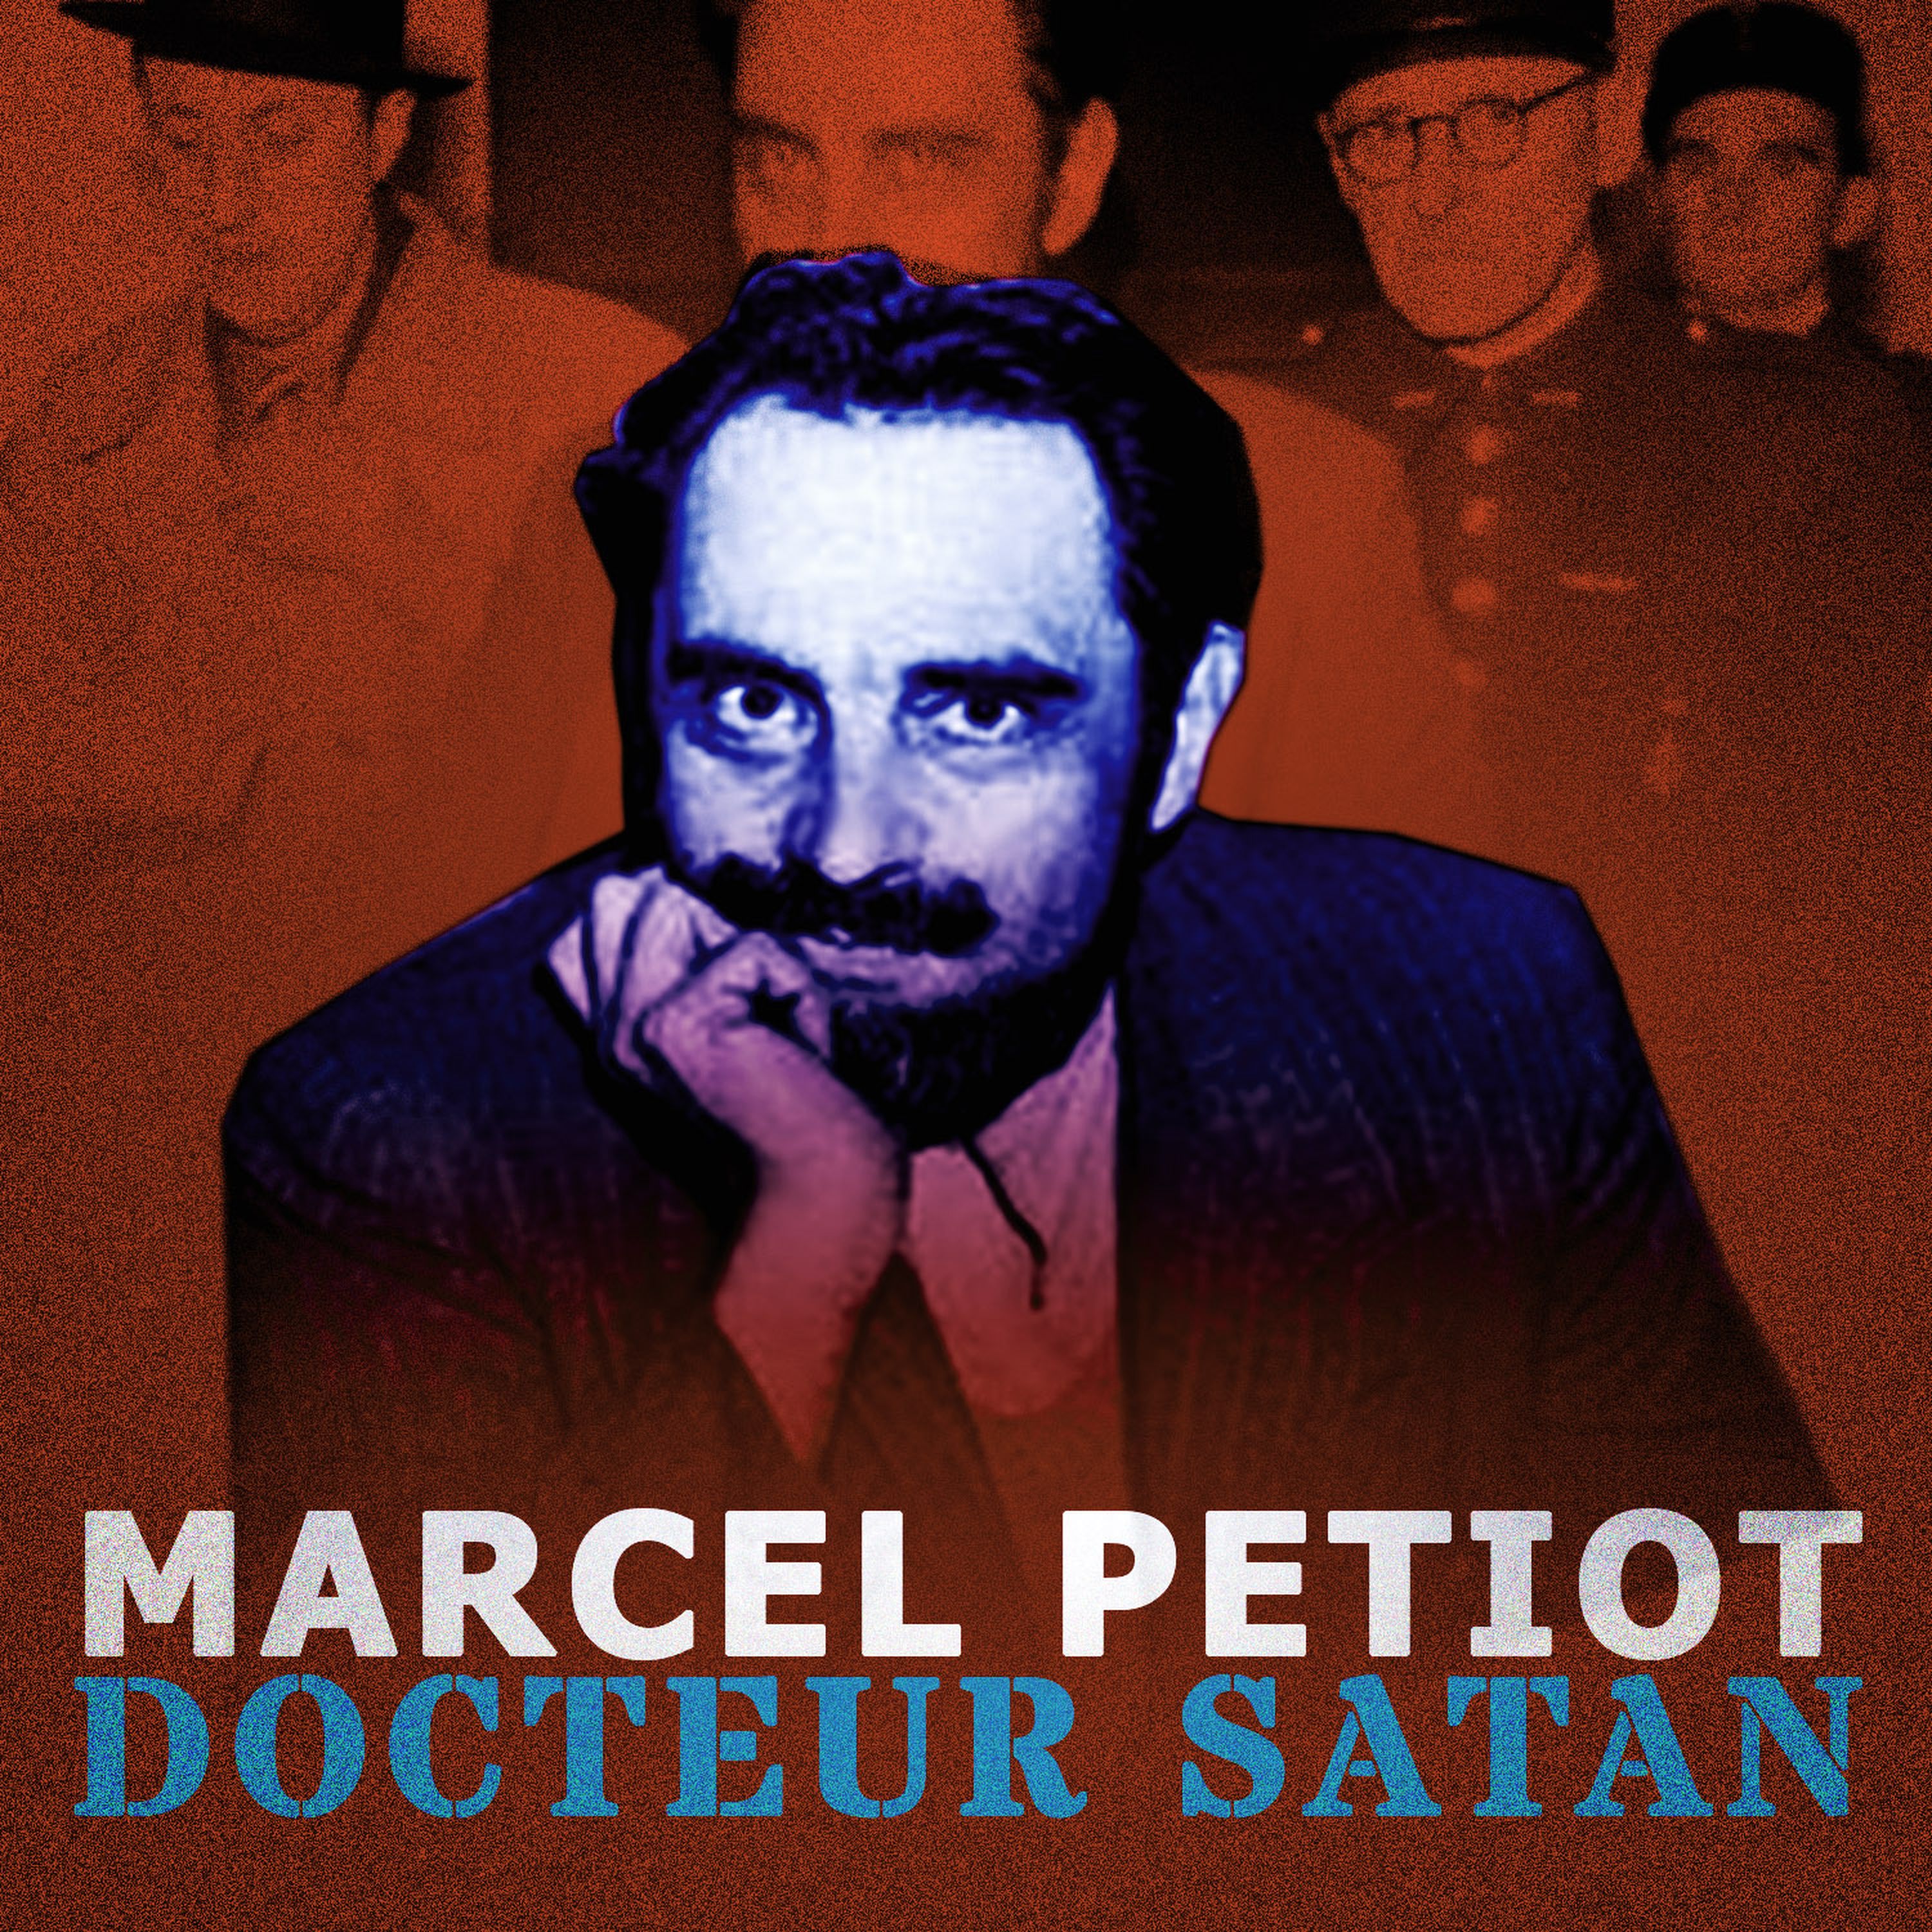 Marcel Petiot, le docteur Satan